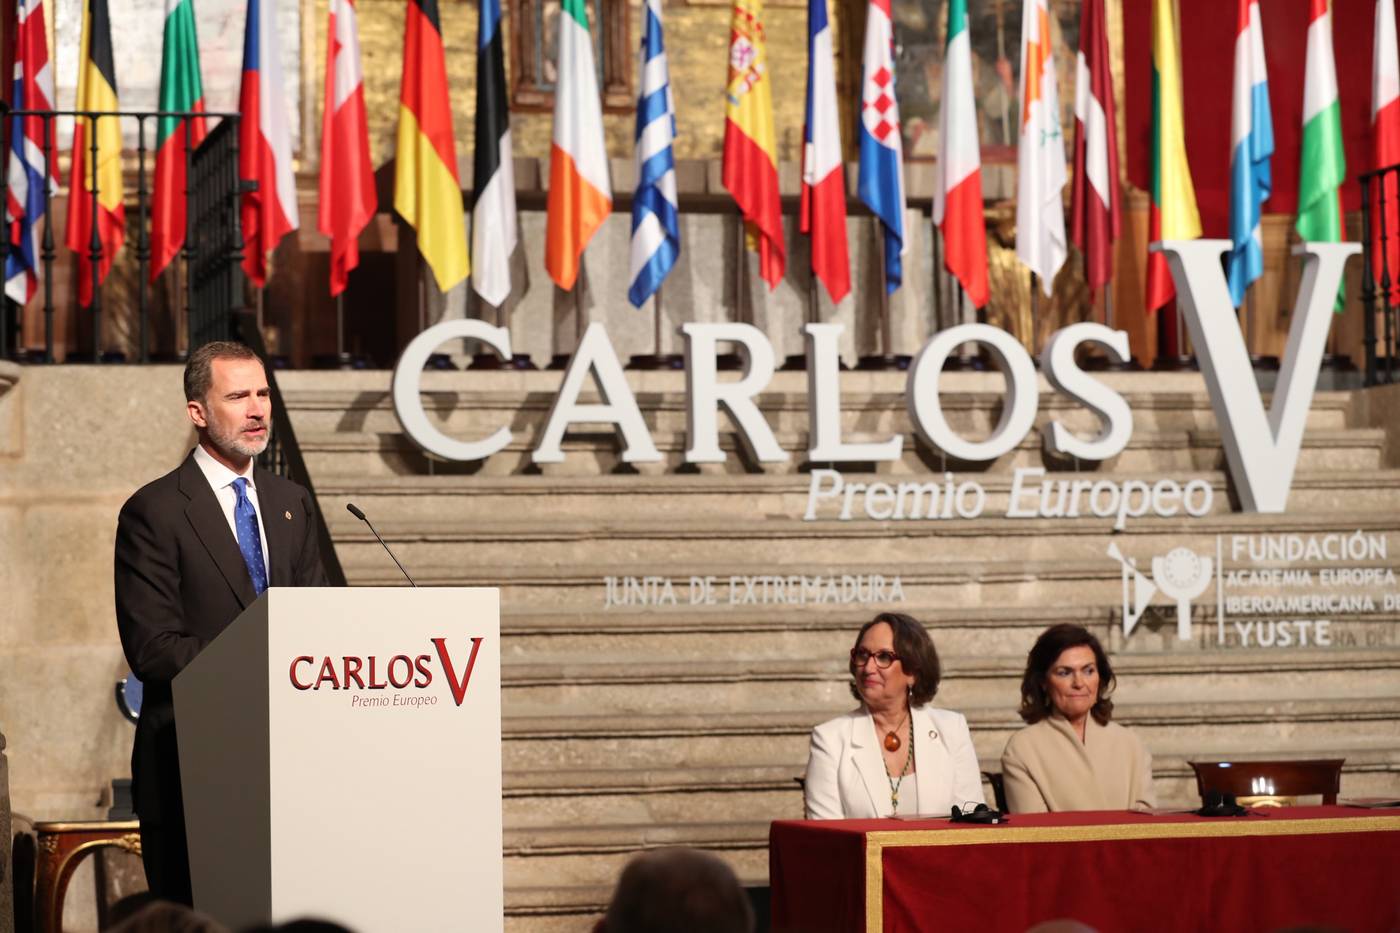 Premio Carlos V 2019